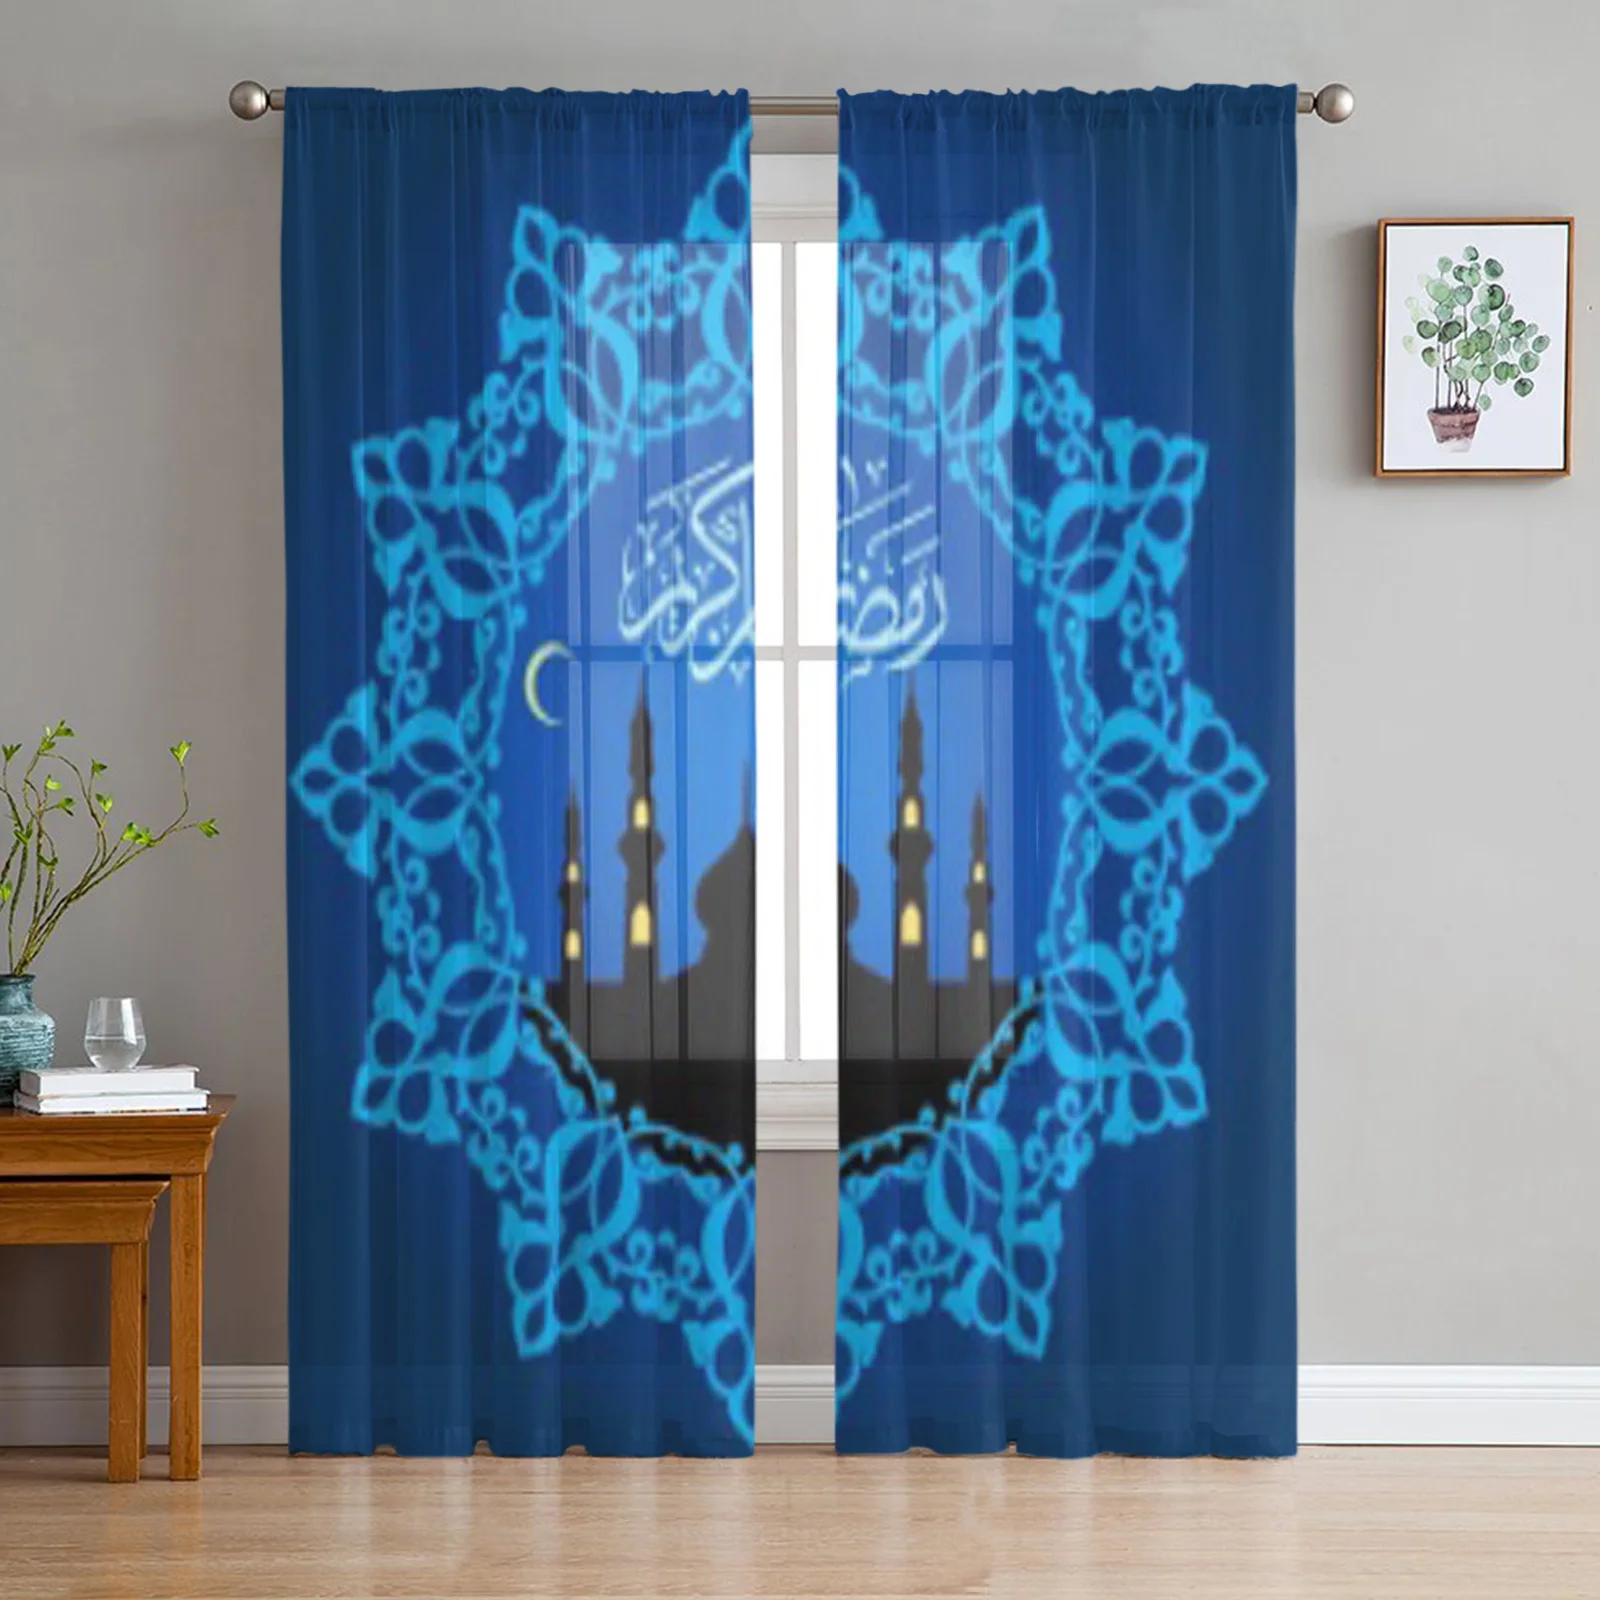 

Ramdan, голубые тюлевые прозрачные оконные шторы для гостиной, спальни, современные драпировки из органзы, декоративные занавески